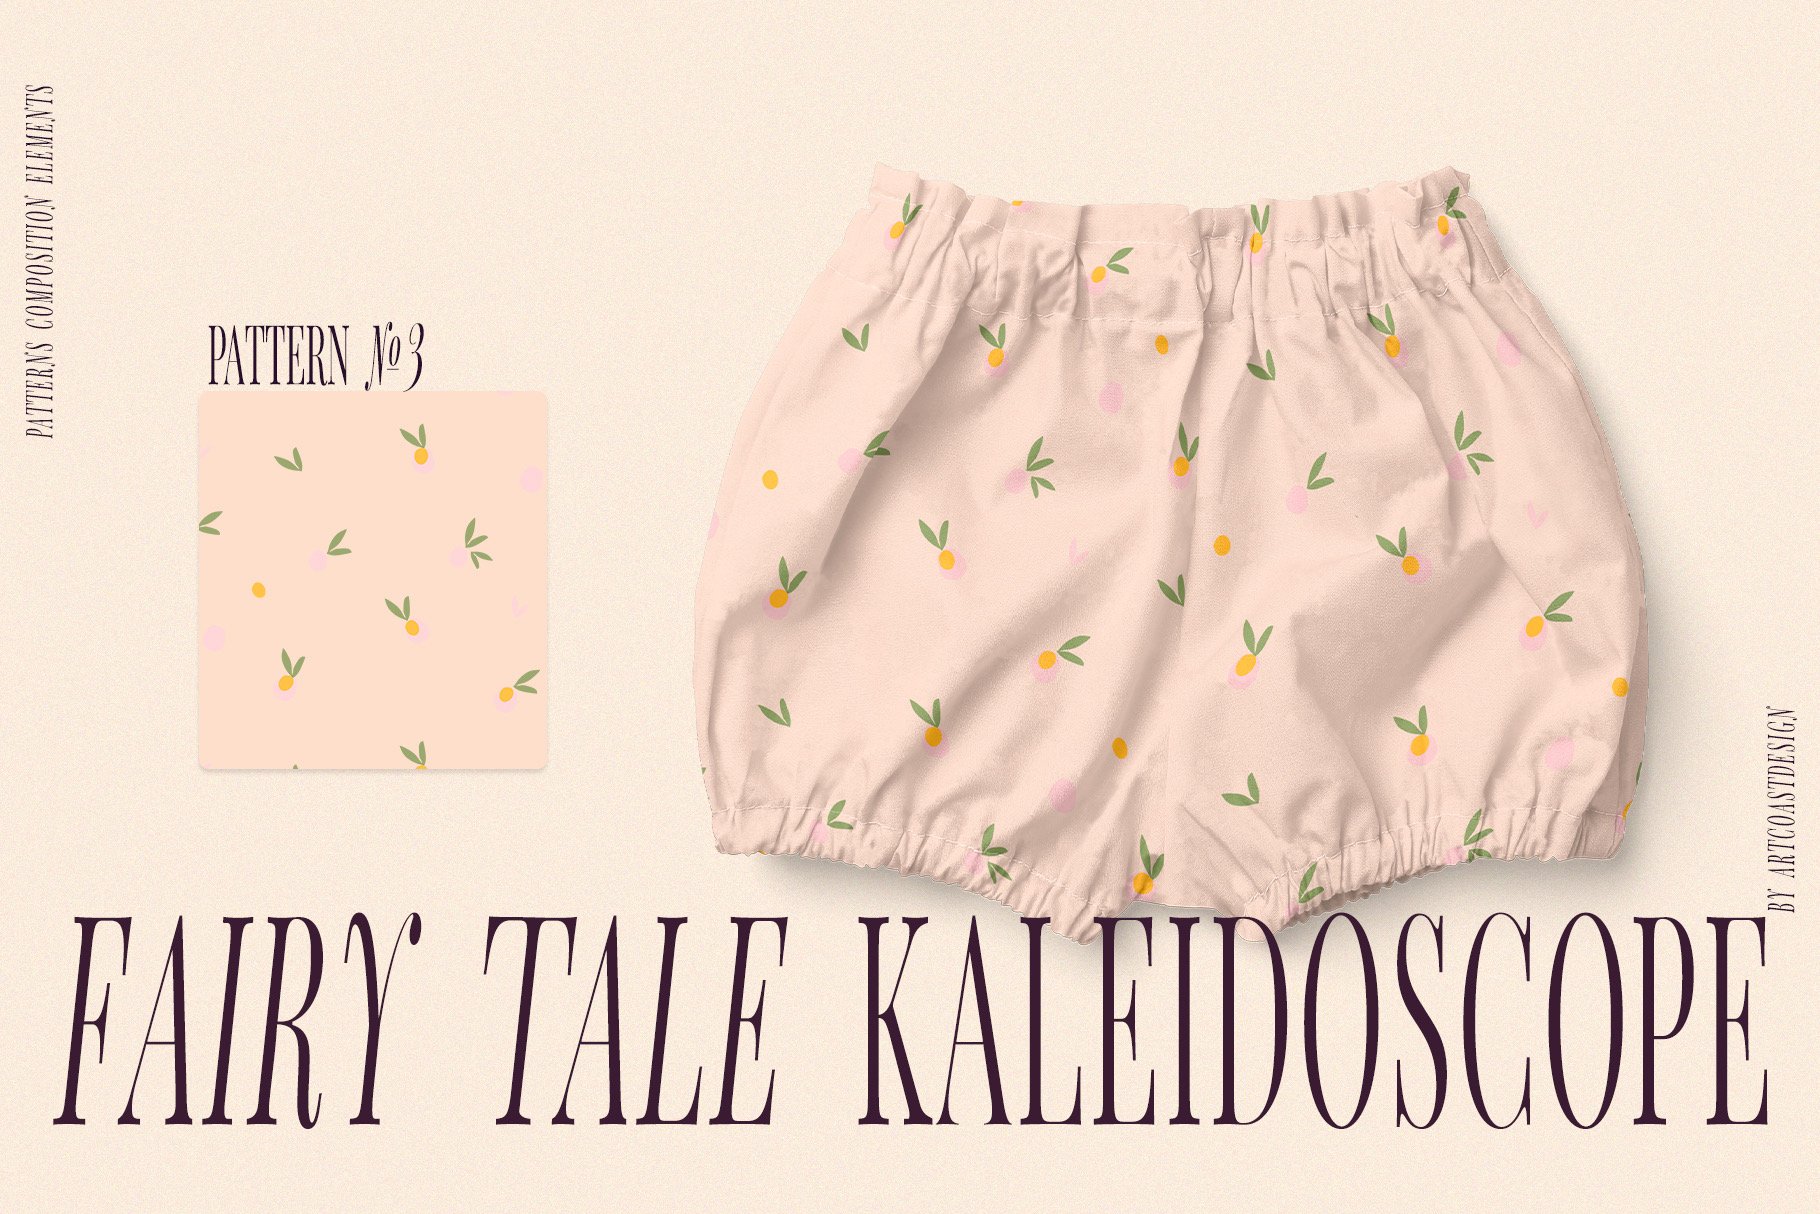 Fairy-Tale-Kaleidoscope-Vector-Art-Patterns-3.jpeg